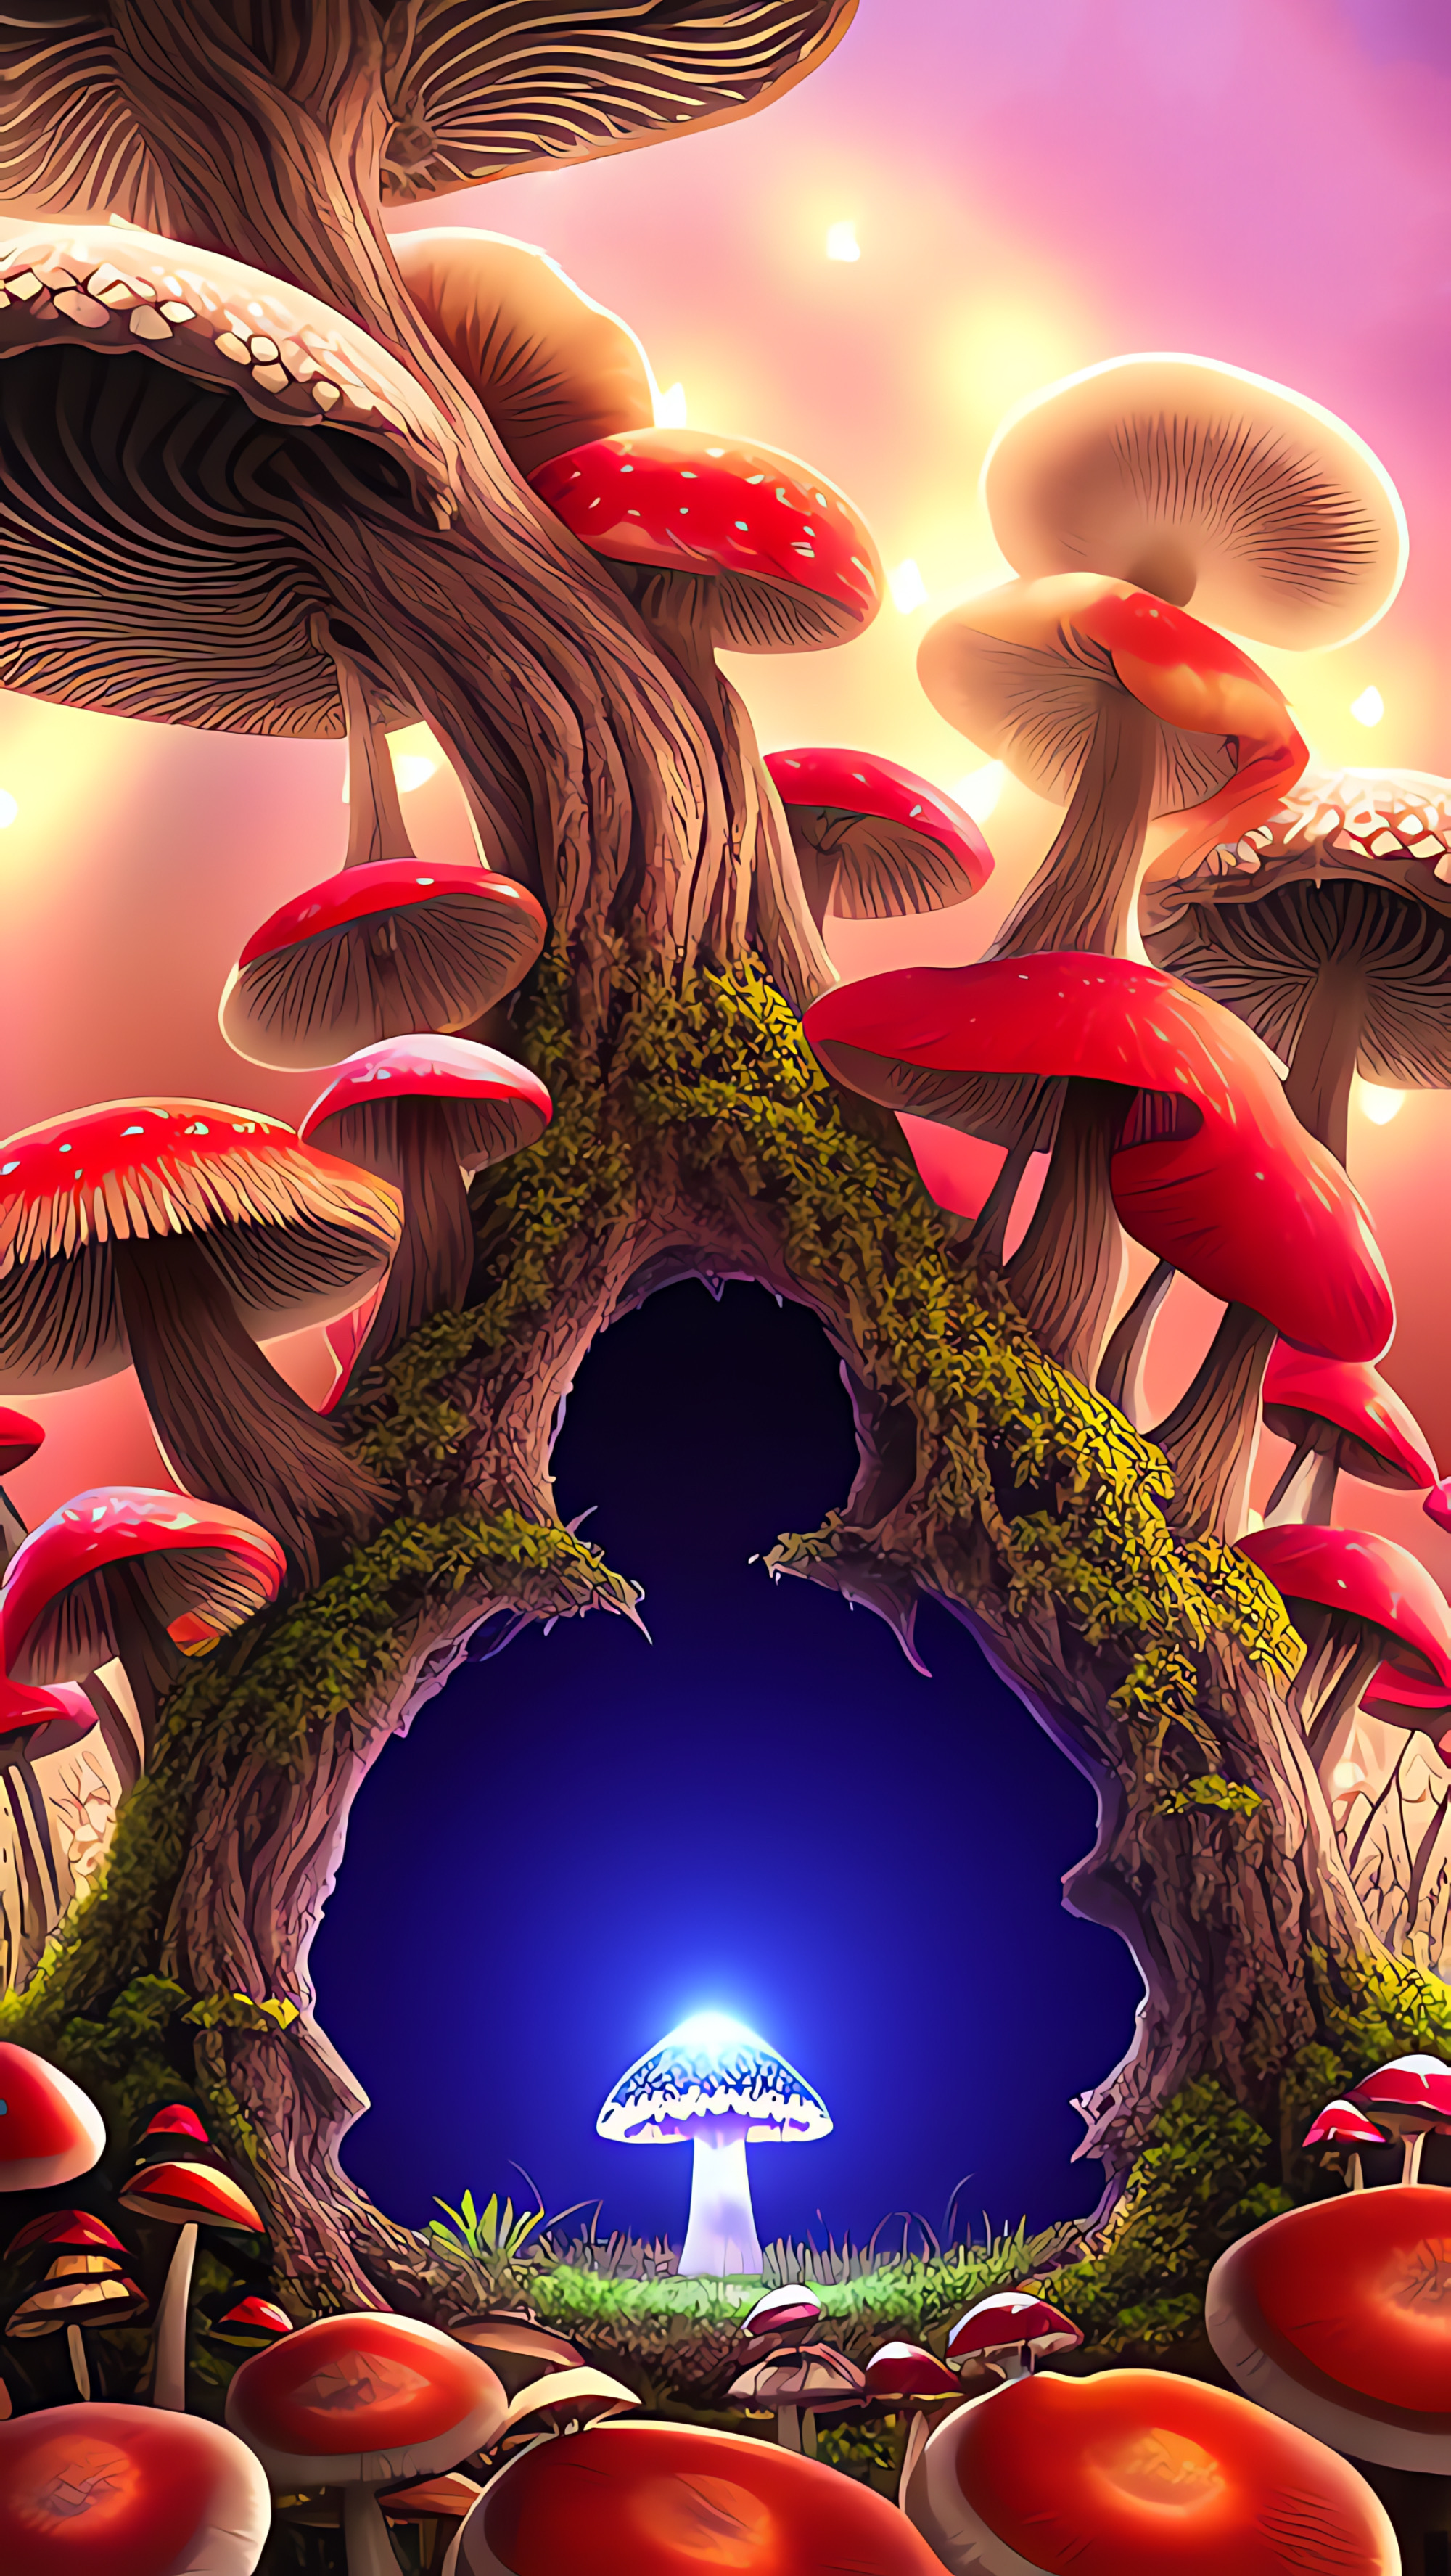 Mandelbrot Mushroom Kingdom: The Rabbit Hole